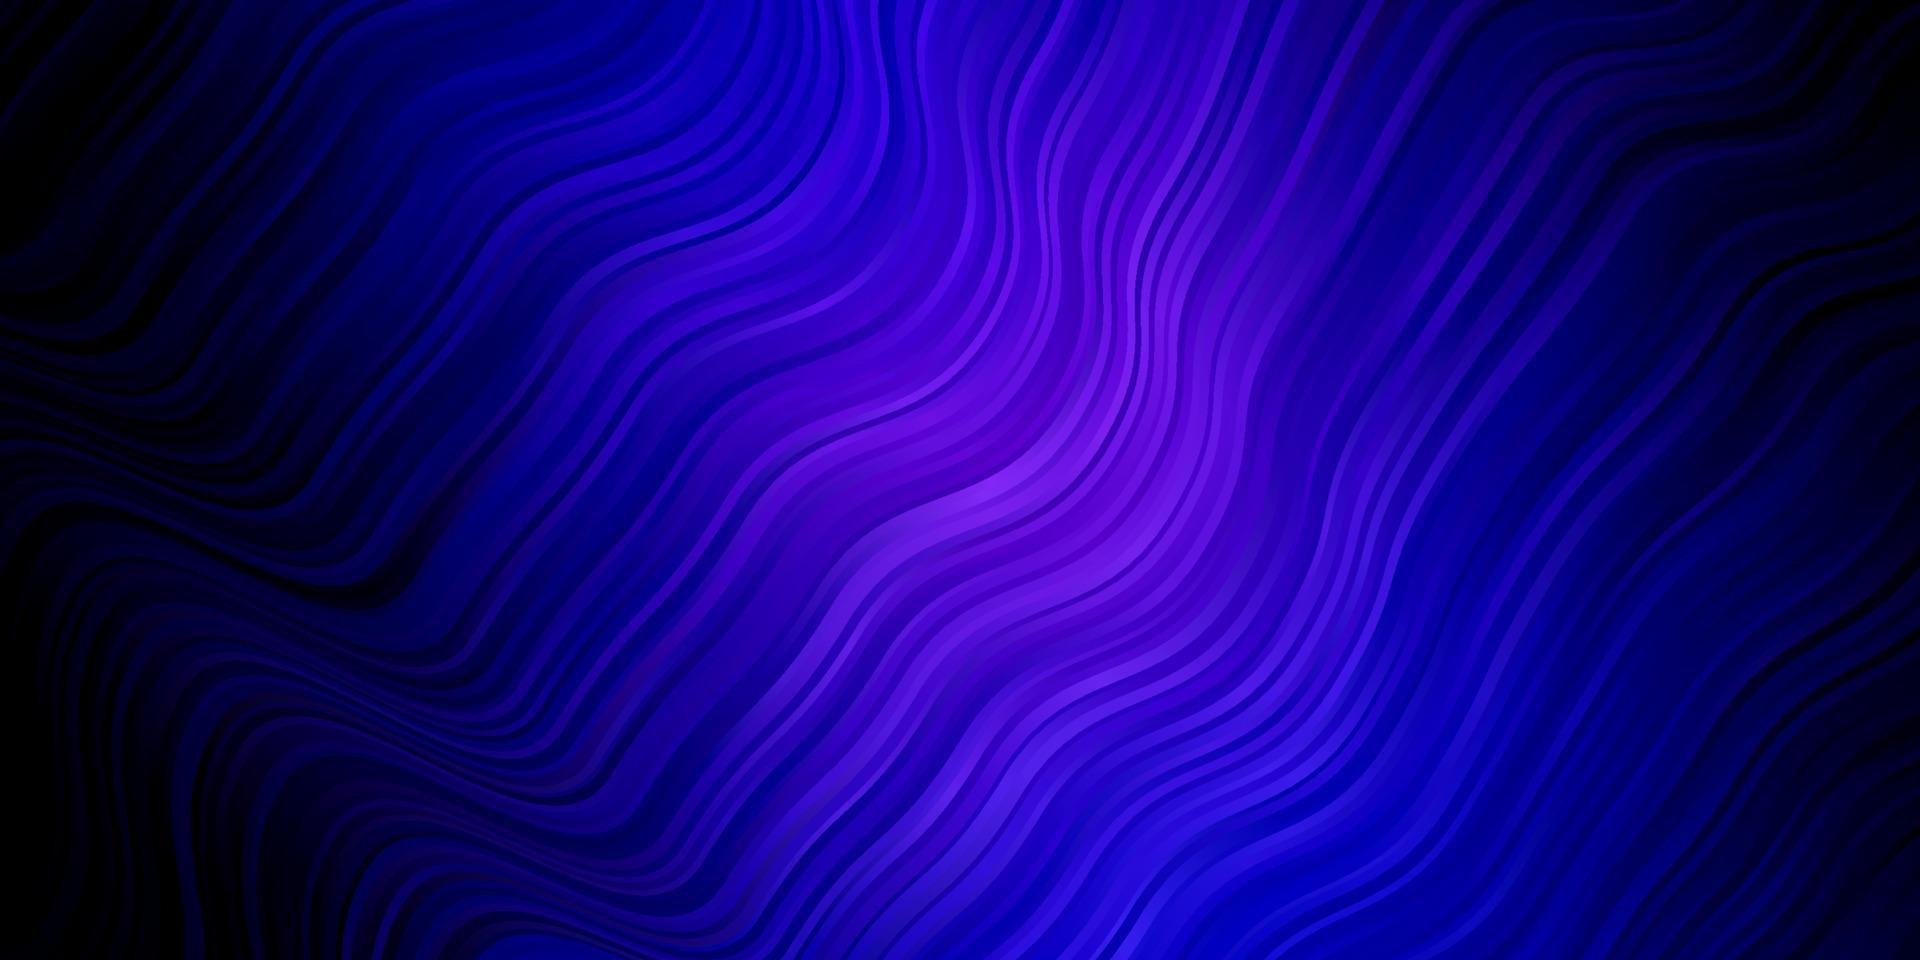 plantilla de vector azul oscuro con líneas curvas.